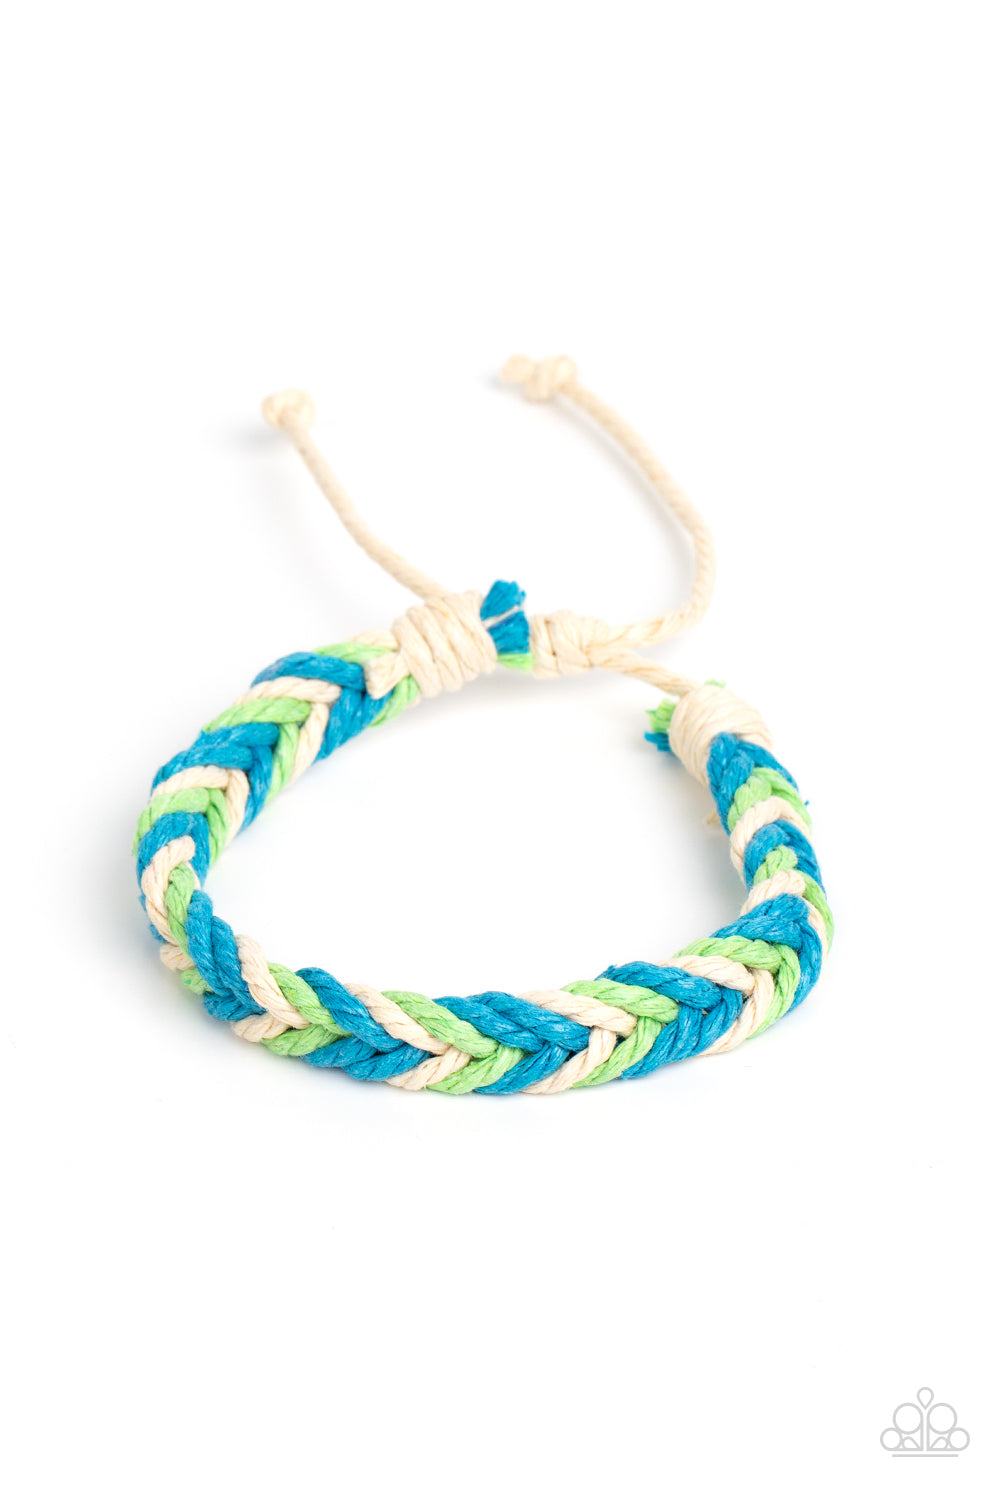 Born to Travel - Blue, Green, & White Woven Cording Paparazzi Urban Bracelet